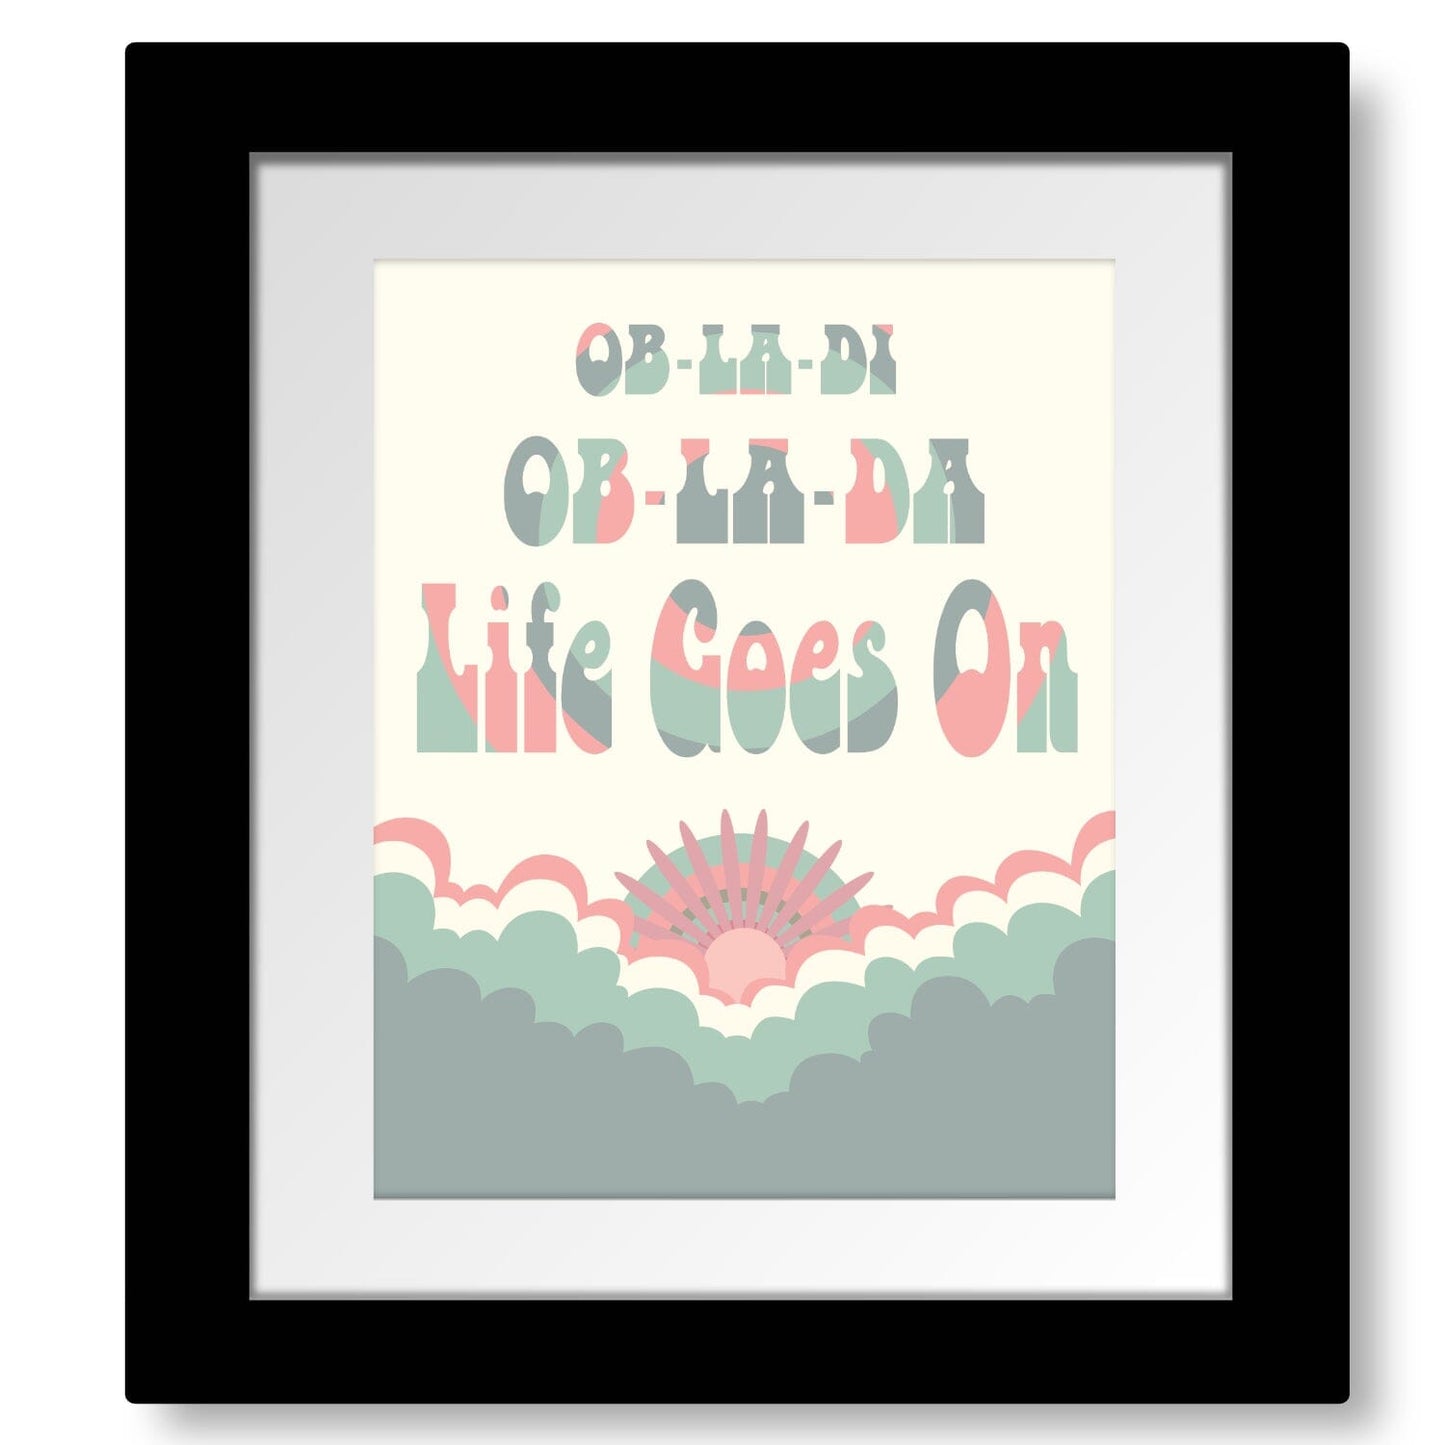 Ob-La-Di Ob-La-Da by the Beatles - Song Lyrics Music Print Song Lyrics Art Song Lyrics Art 8x10 Framed Print (without mat) 